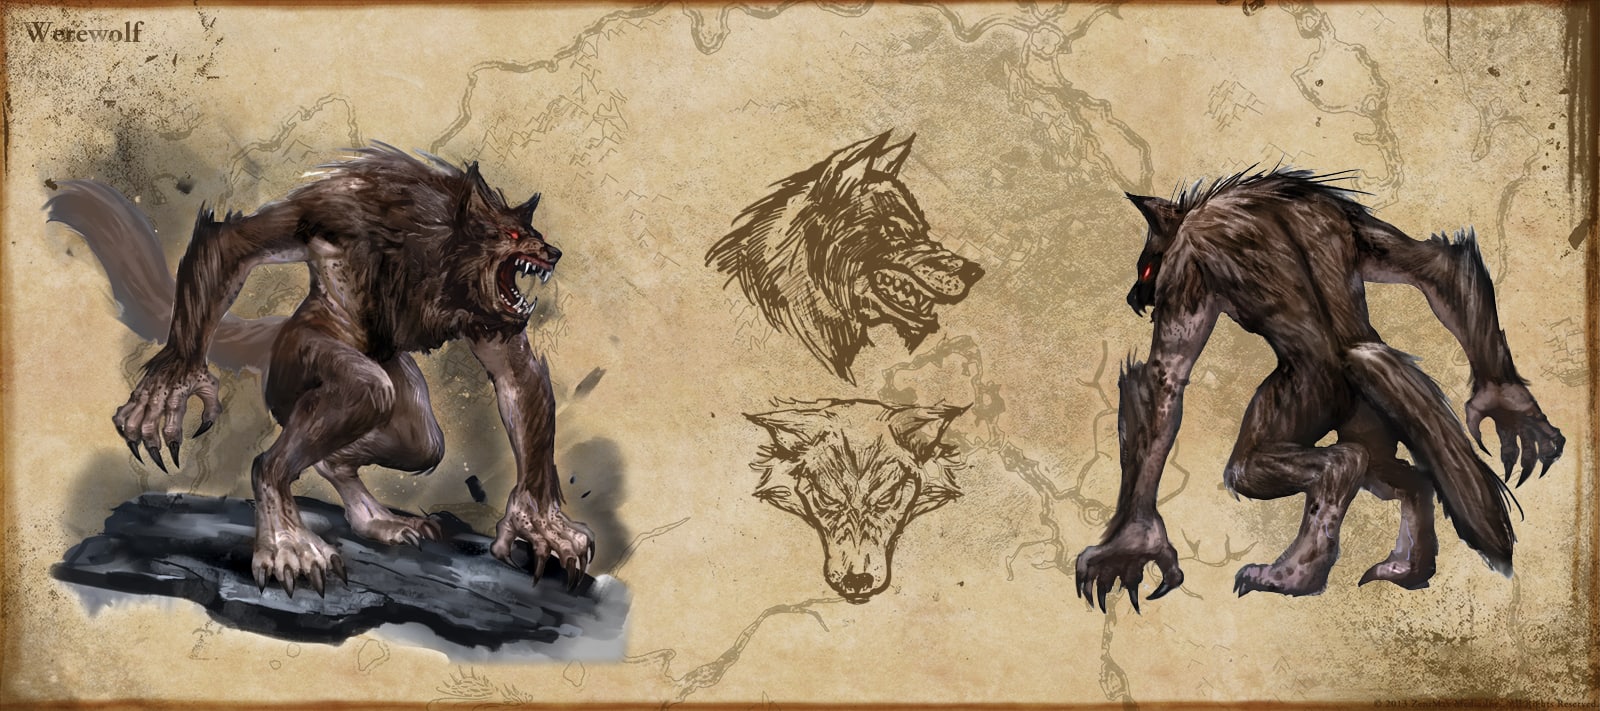 Creating ESO: Werewolf - Elder Scrolls Online